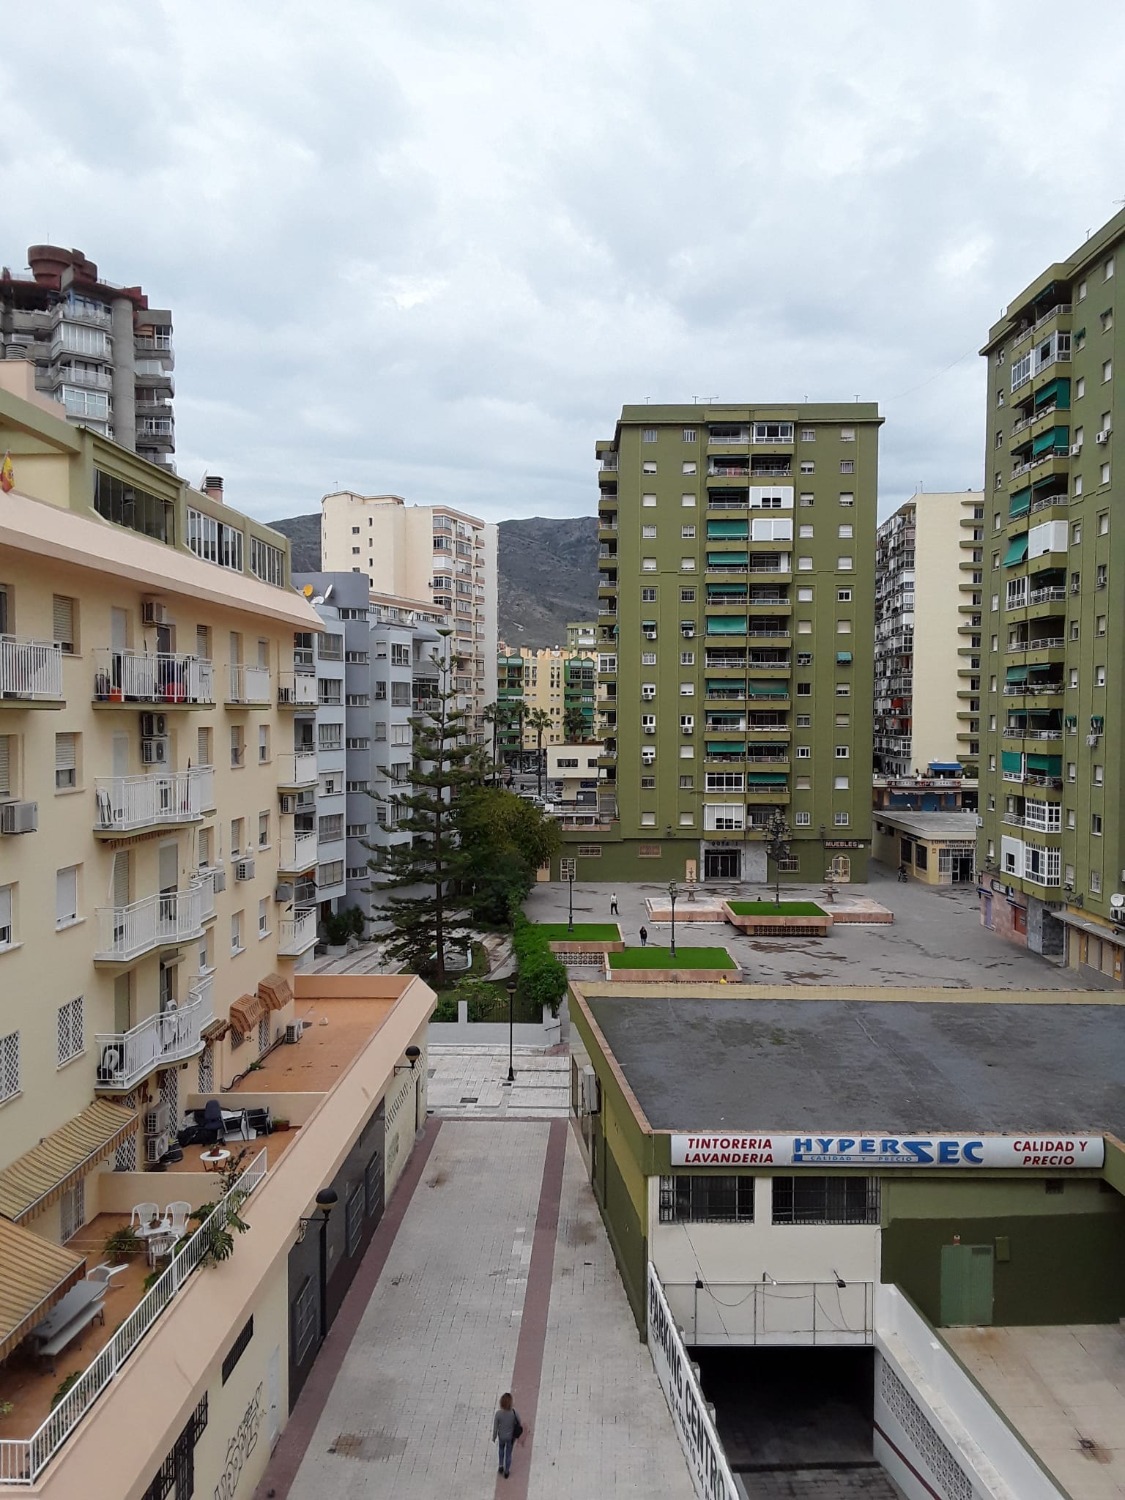 Lägenhet till salu i centrum av Torremolinos